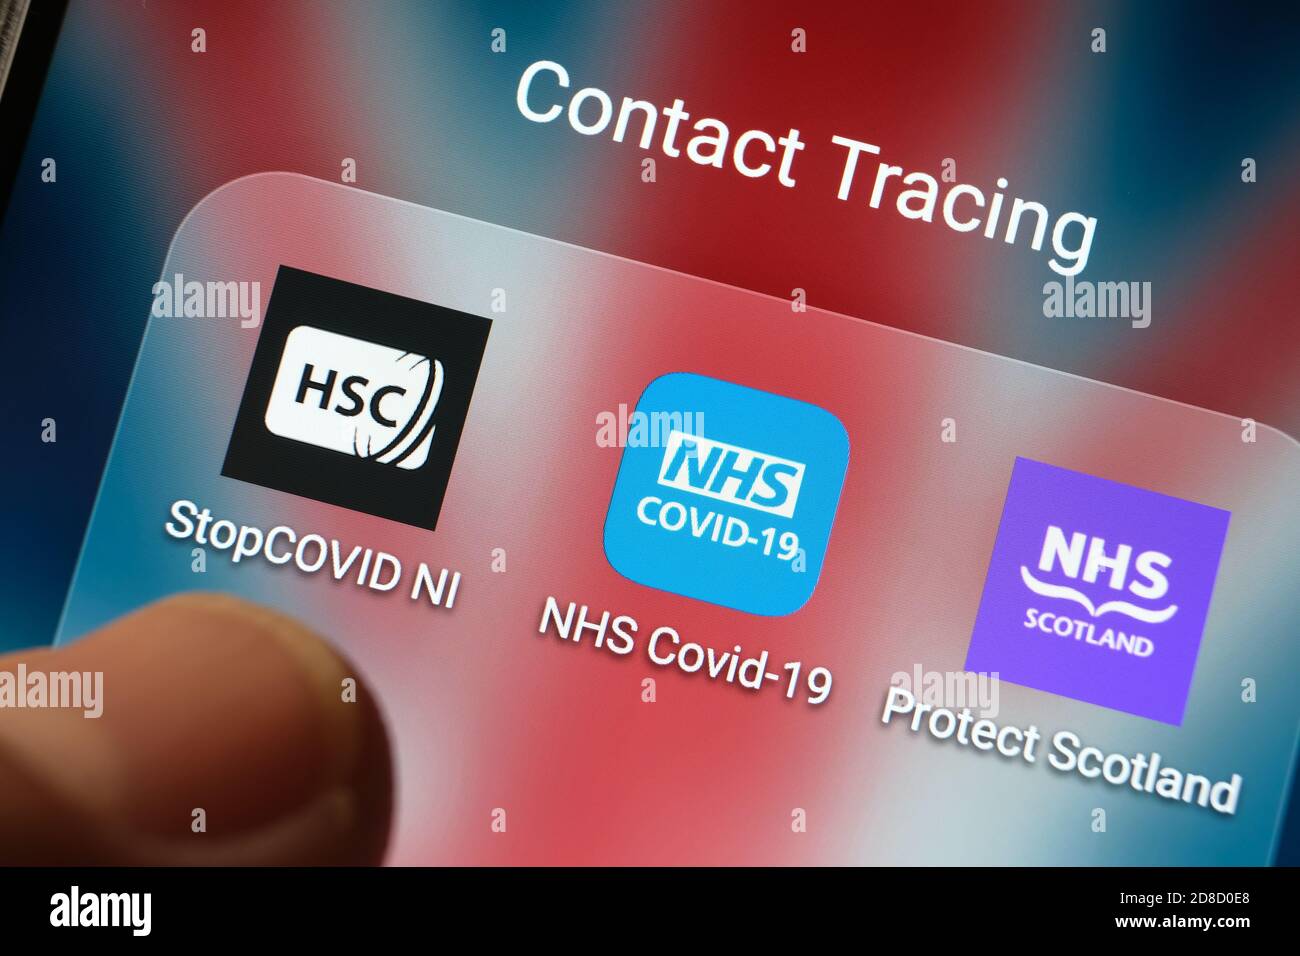 Die britische NHS COVID-19-App und andere Apps zur Kontaktverfolgung, die auf einem Bildschirm angezeigt werden und mit verschwommenen Fingerspitzen auf sie zeigen. Stockfoto